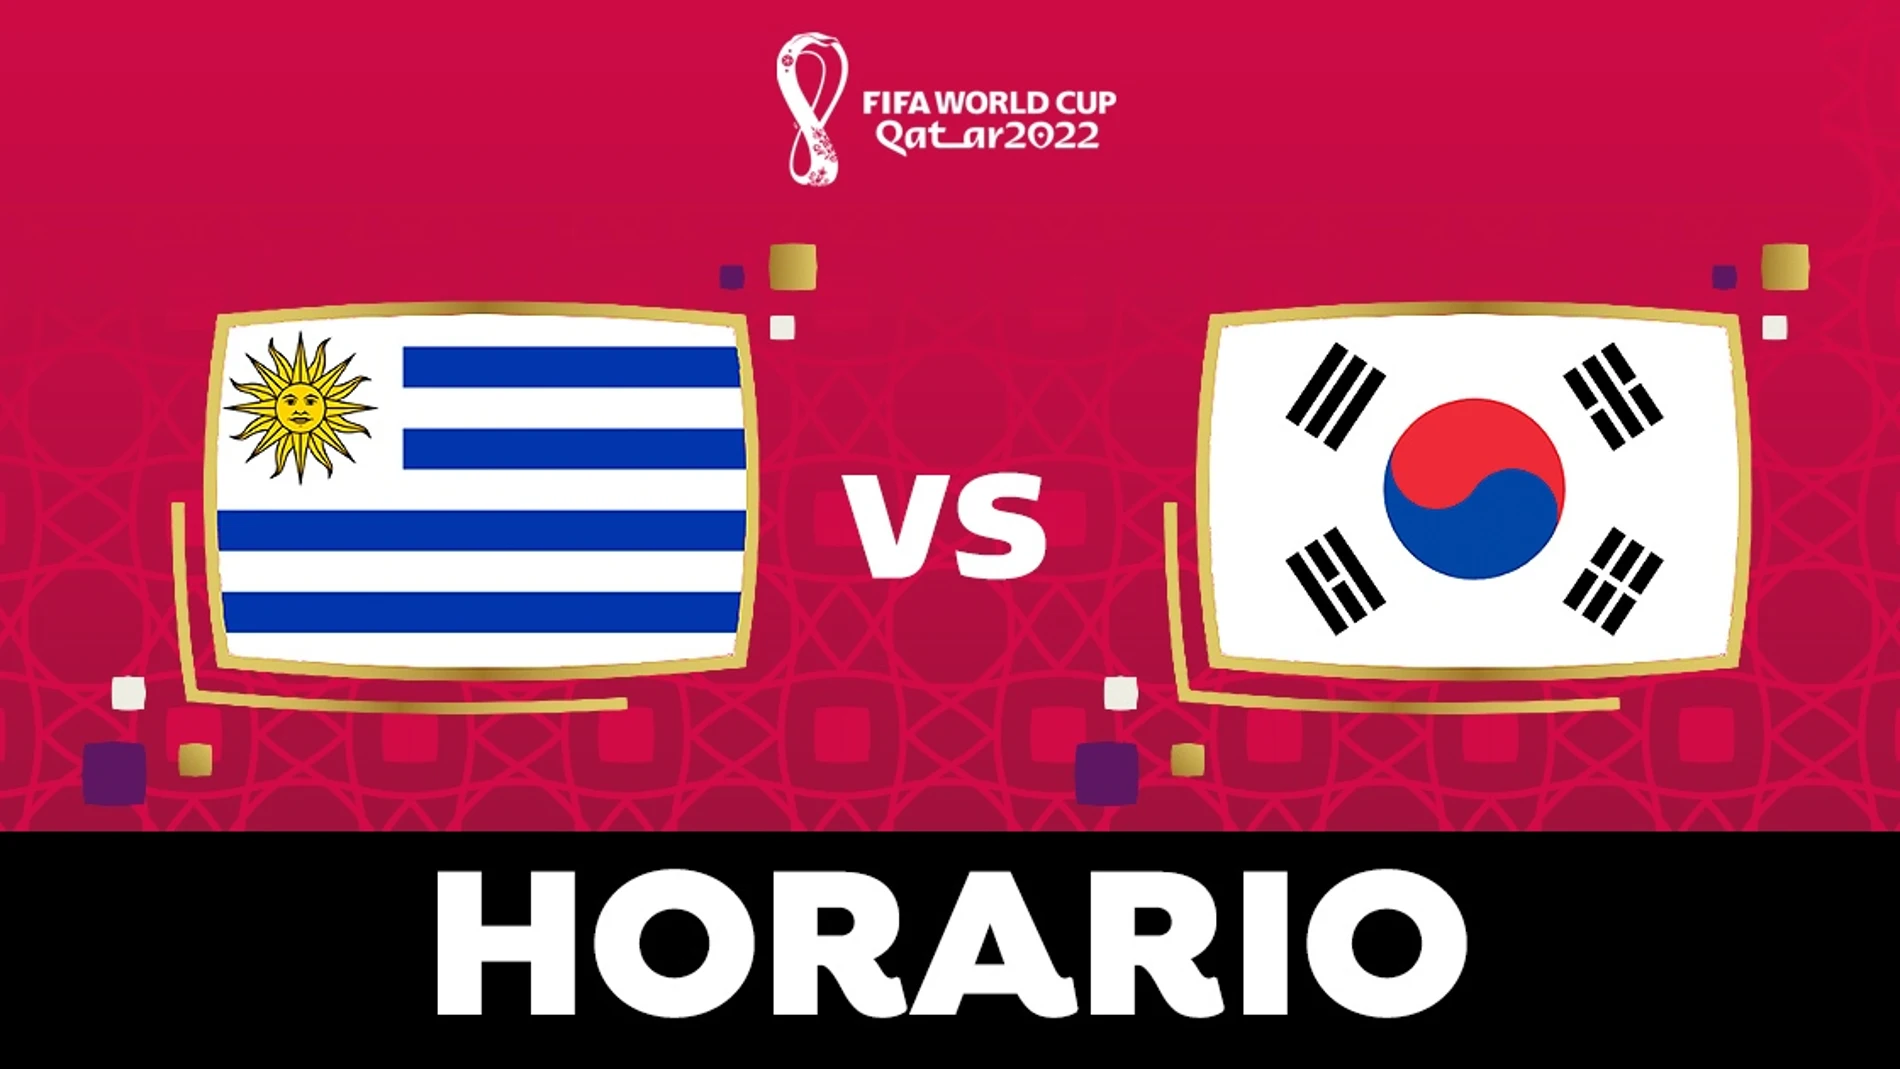 salario nuestra seguro Uruguay - Corea del Sur: Horario, alineaciones y dónde ver el partido del  Mundial de Qatar 2022